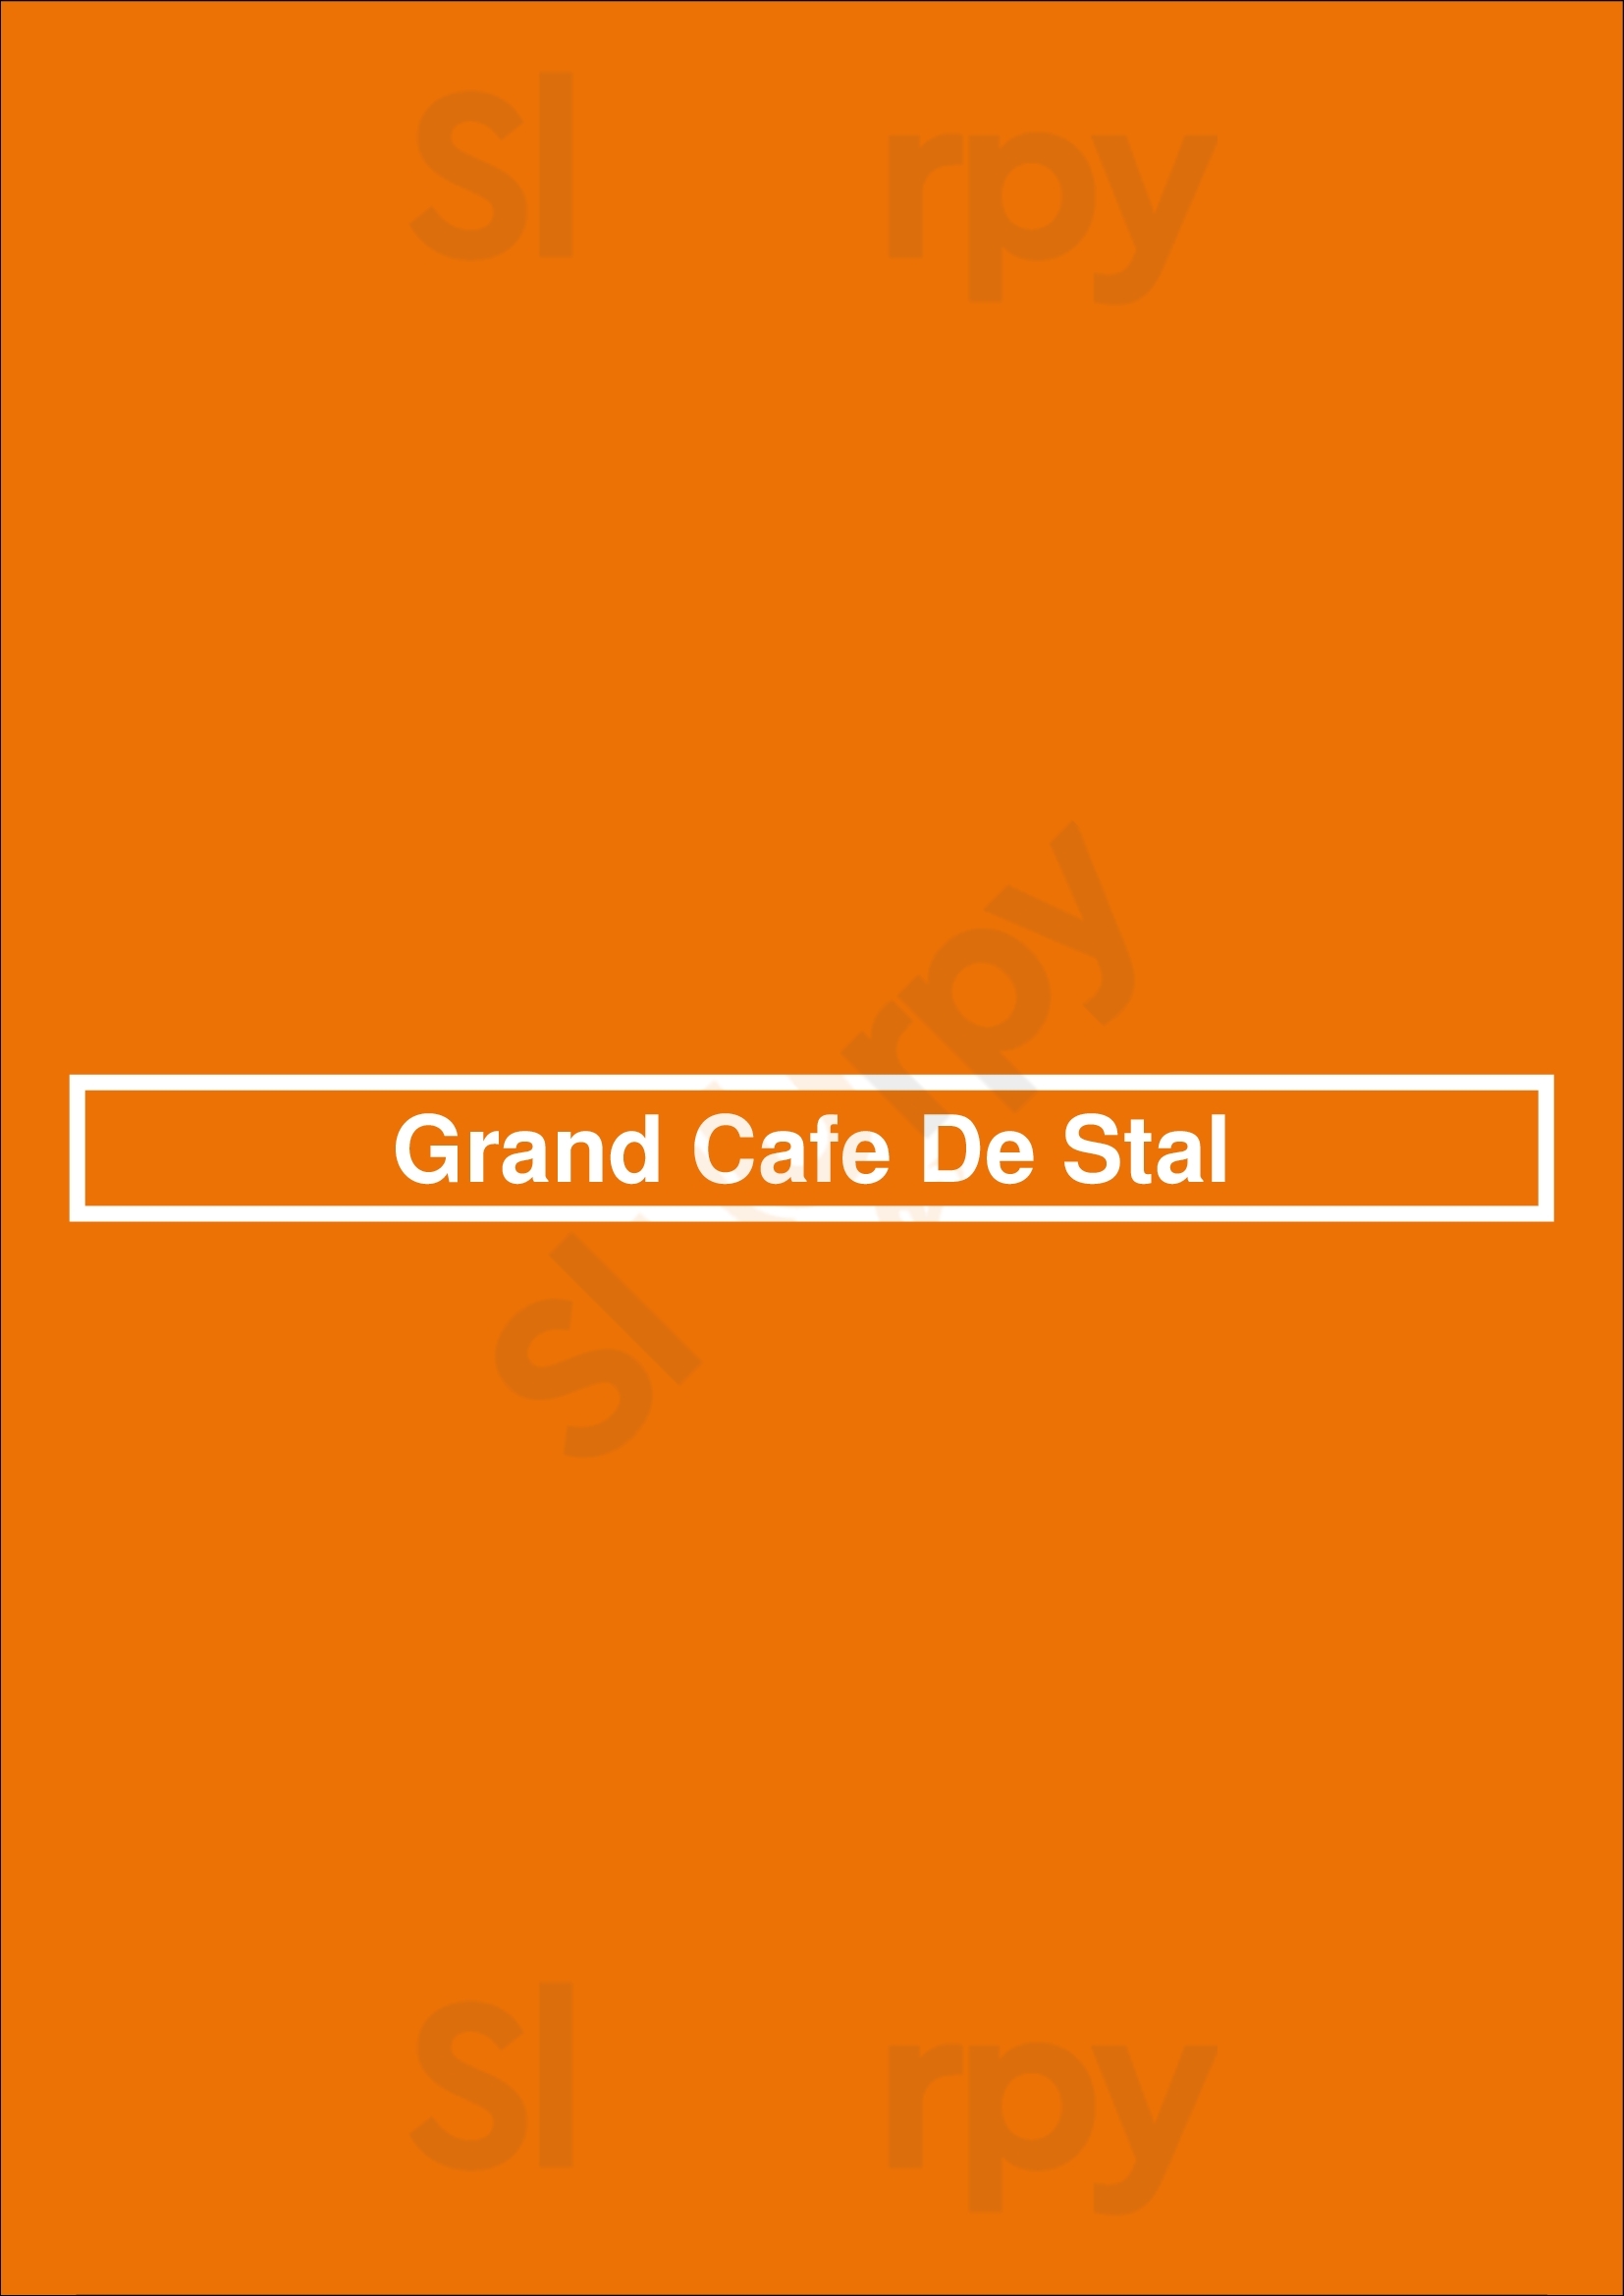 Grand Cafe De Stal Leiden Menu - 1